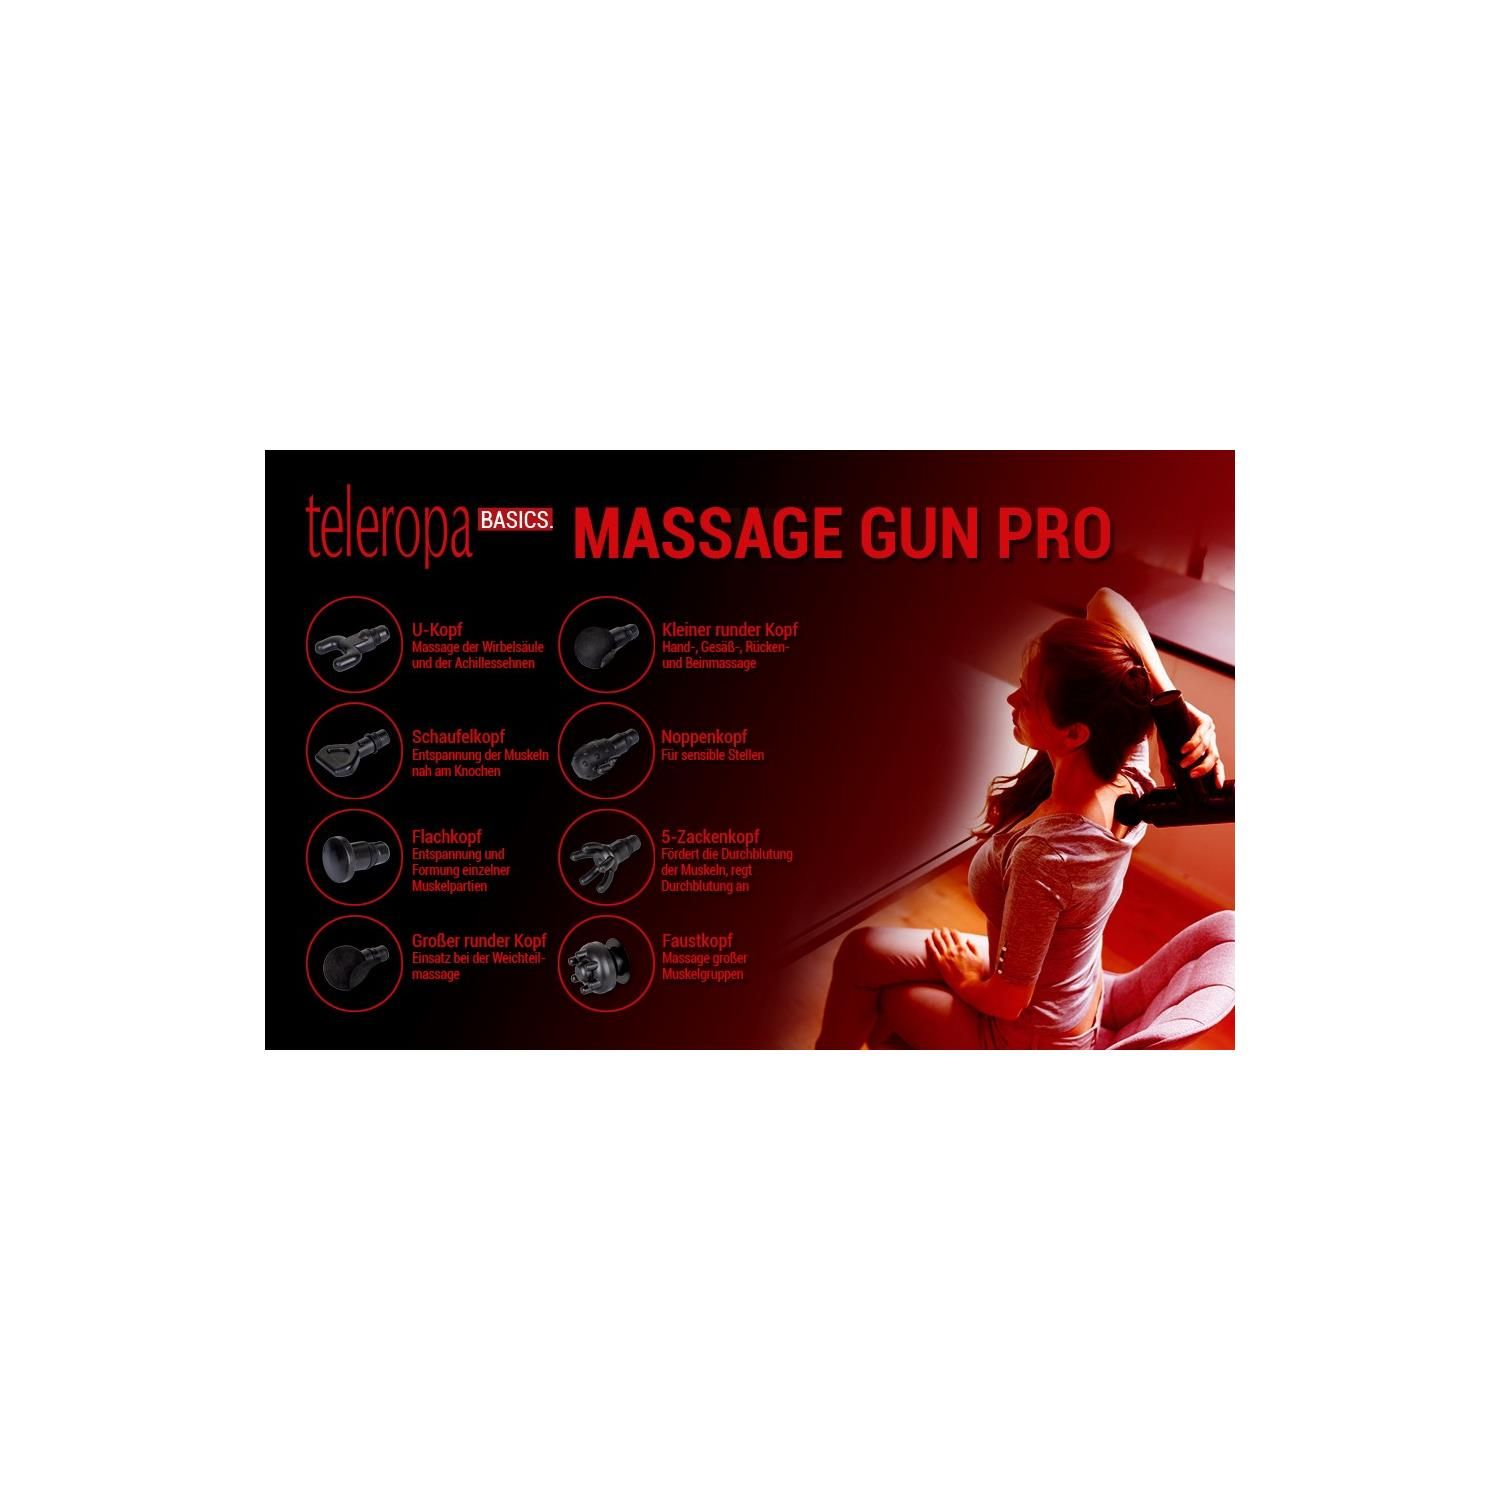 TELEROPA Massage Gun BASICS Massage-Pistole Pro